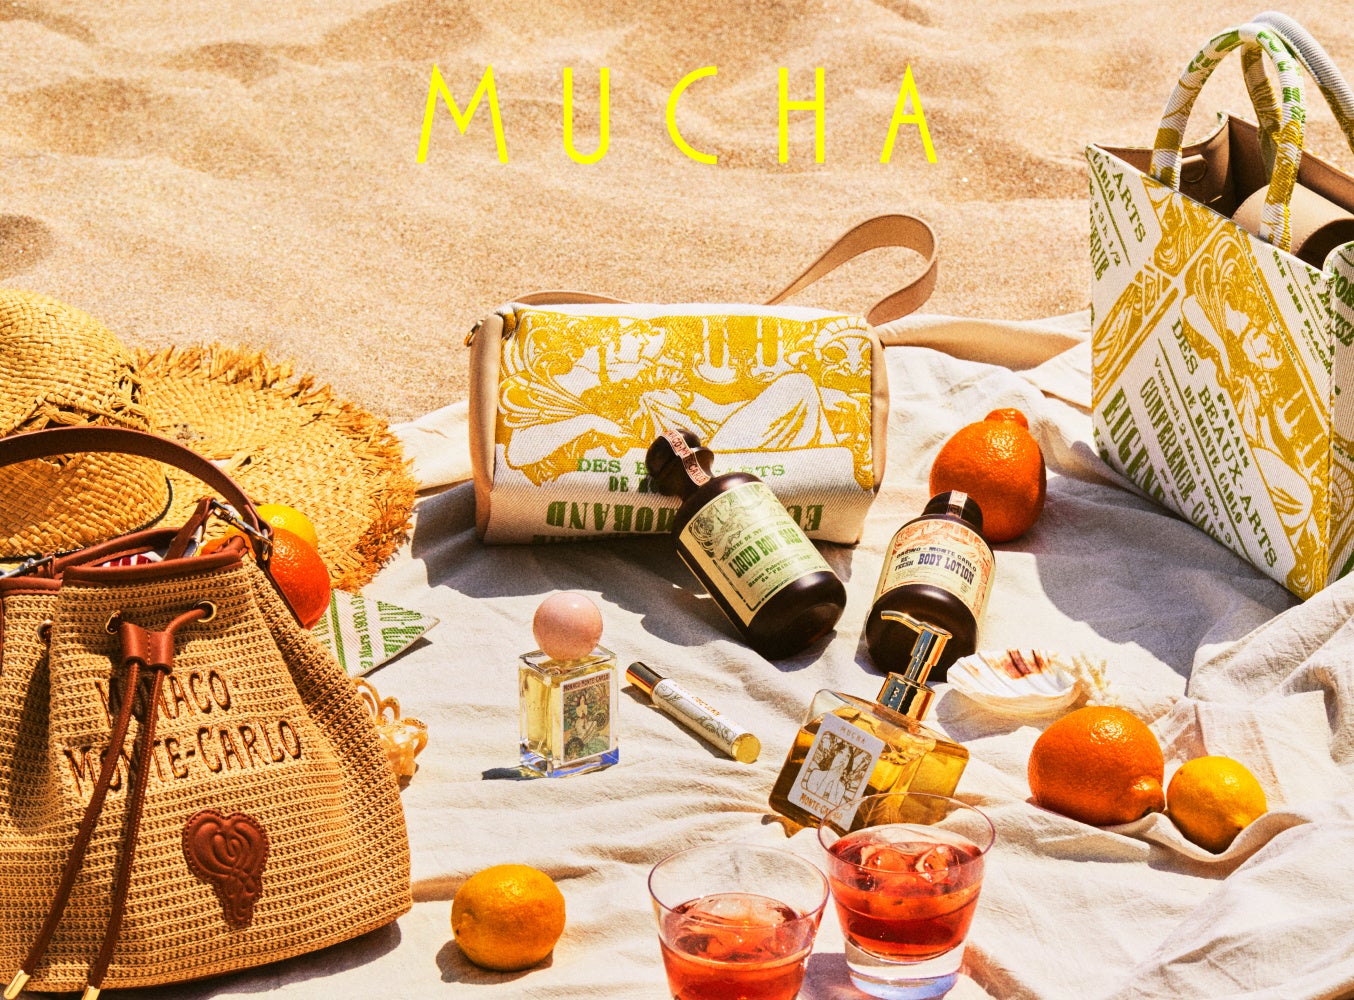 【MUCHA(ミュシャ)】地中海のヴァカンスへ誘う「モナコ・モンテカルロ」をイメージした新たな香りとアートピースのコレクションを新発売。